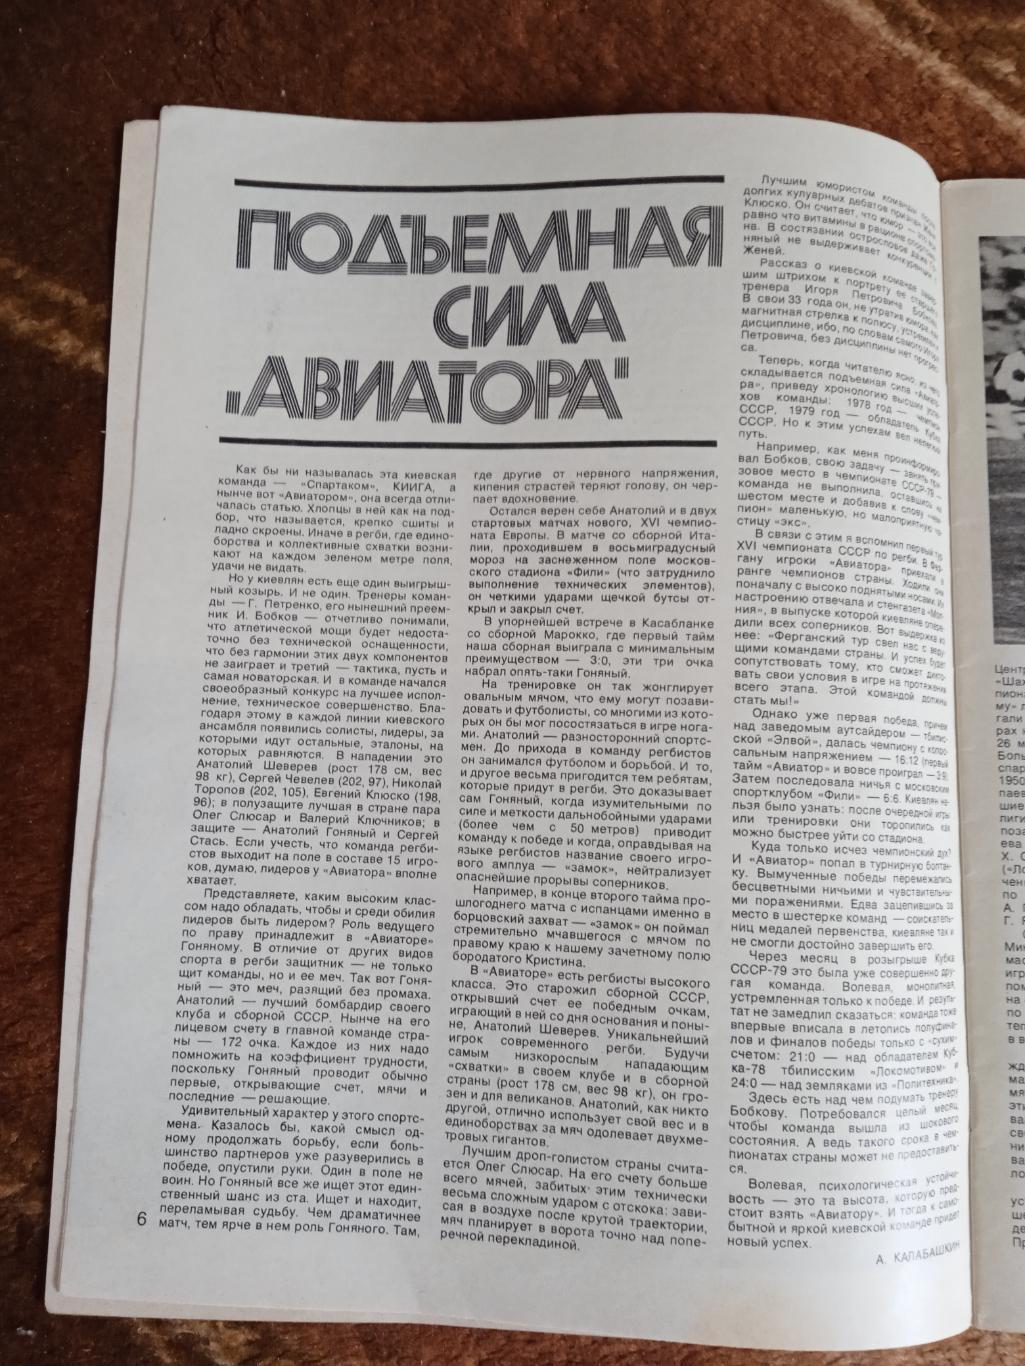 Журнал.Спортивные игры № 2 1980 г. 2